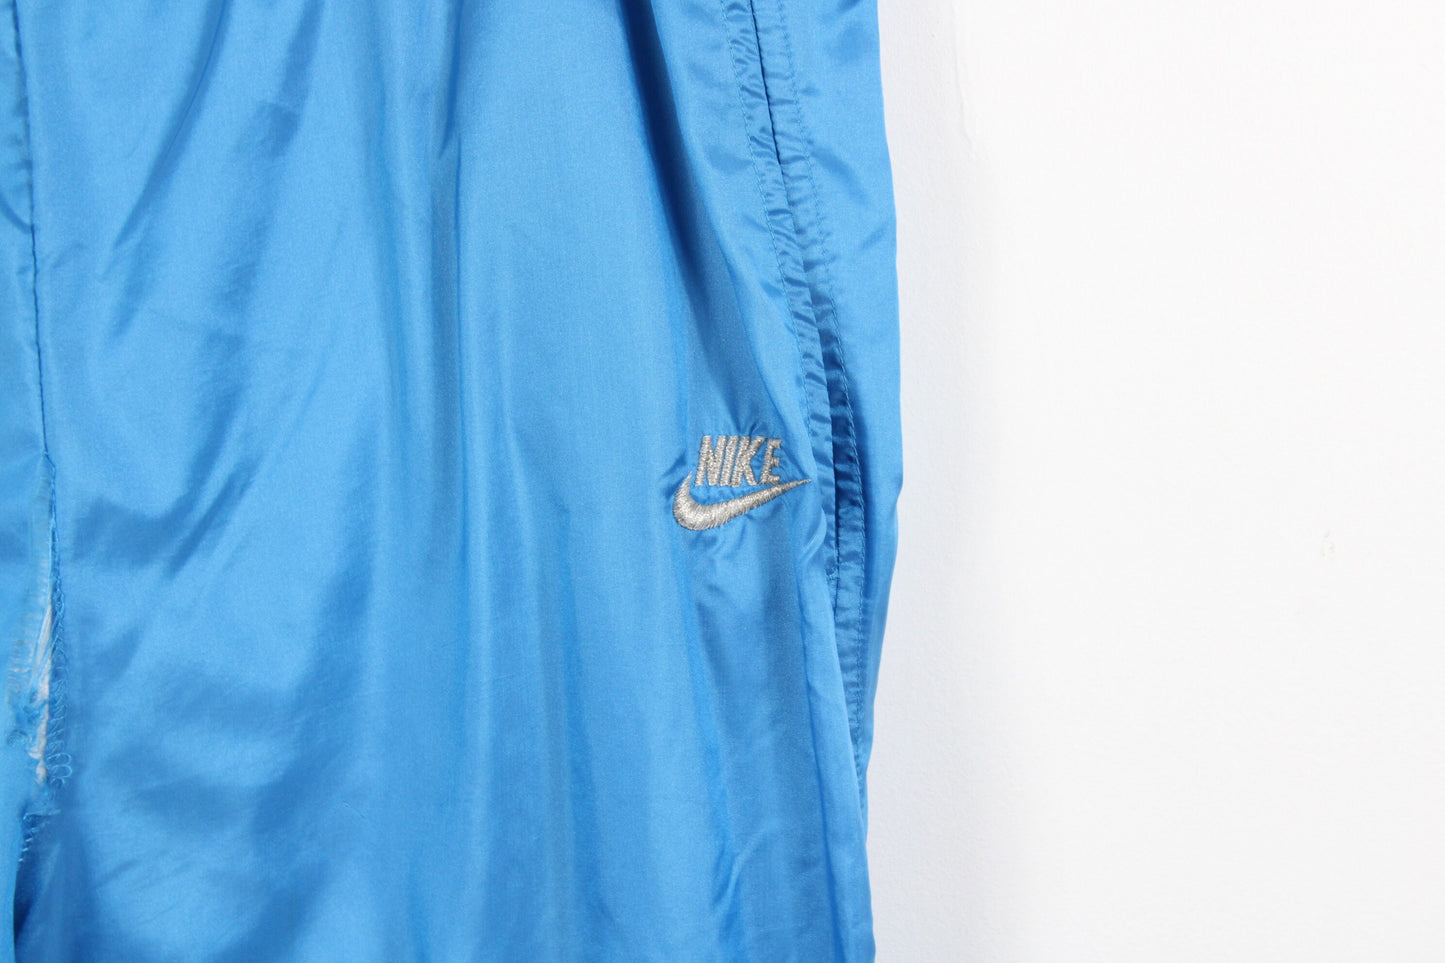 Nike-InternationalTrack-Suit / Air Jordan Sweat-Suit / Vintage Jacket And Pants / Wind-Breaker / 90s / y2k Hip Hop Clothing / Streetwear